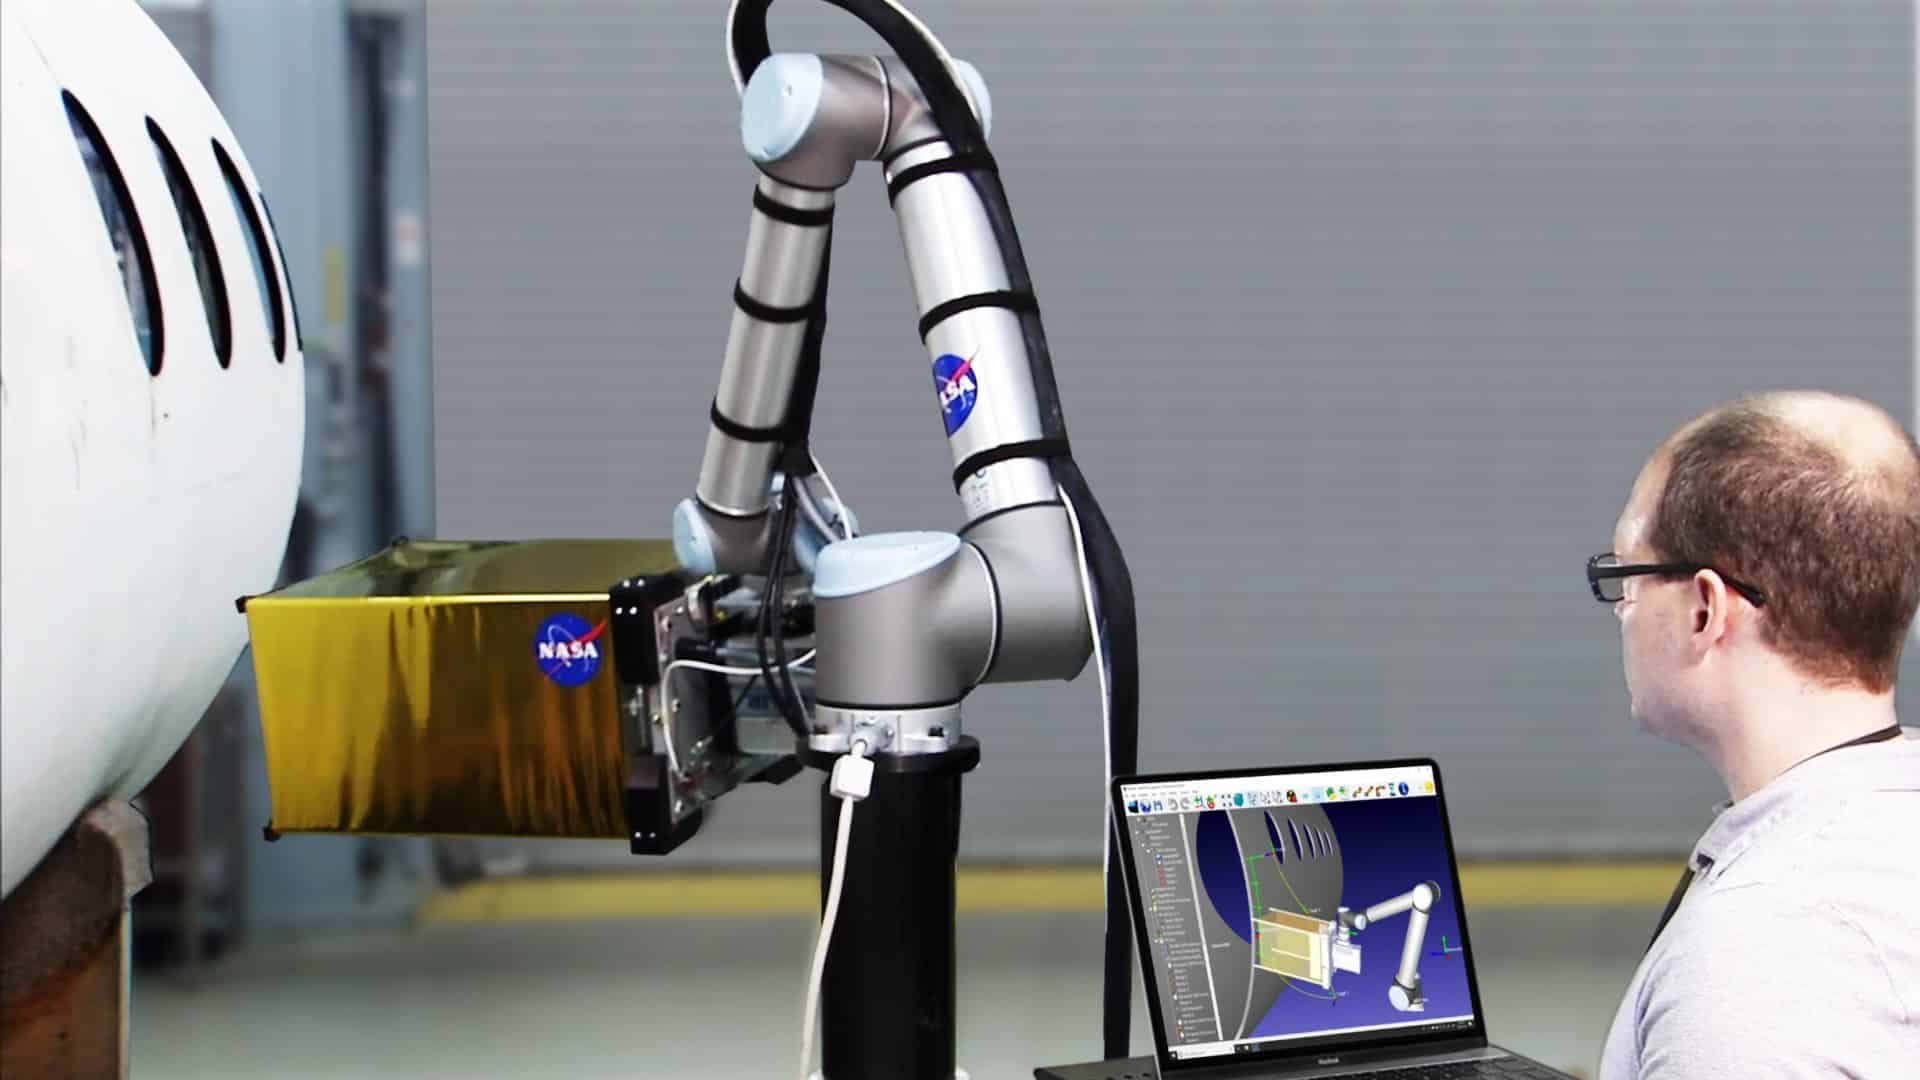 Robot project. Applied Robotics камера. Рефинк Роботикс. Робот симулятор медицинский. Рука робота будущее инженерия.